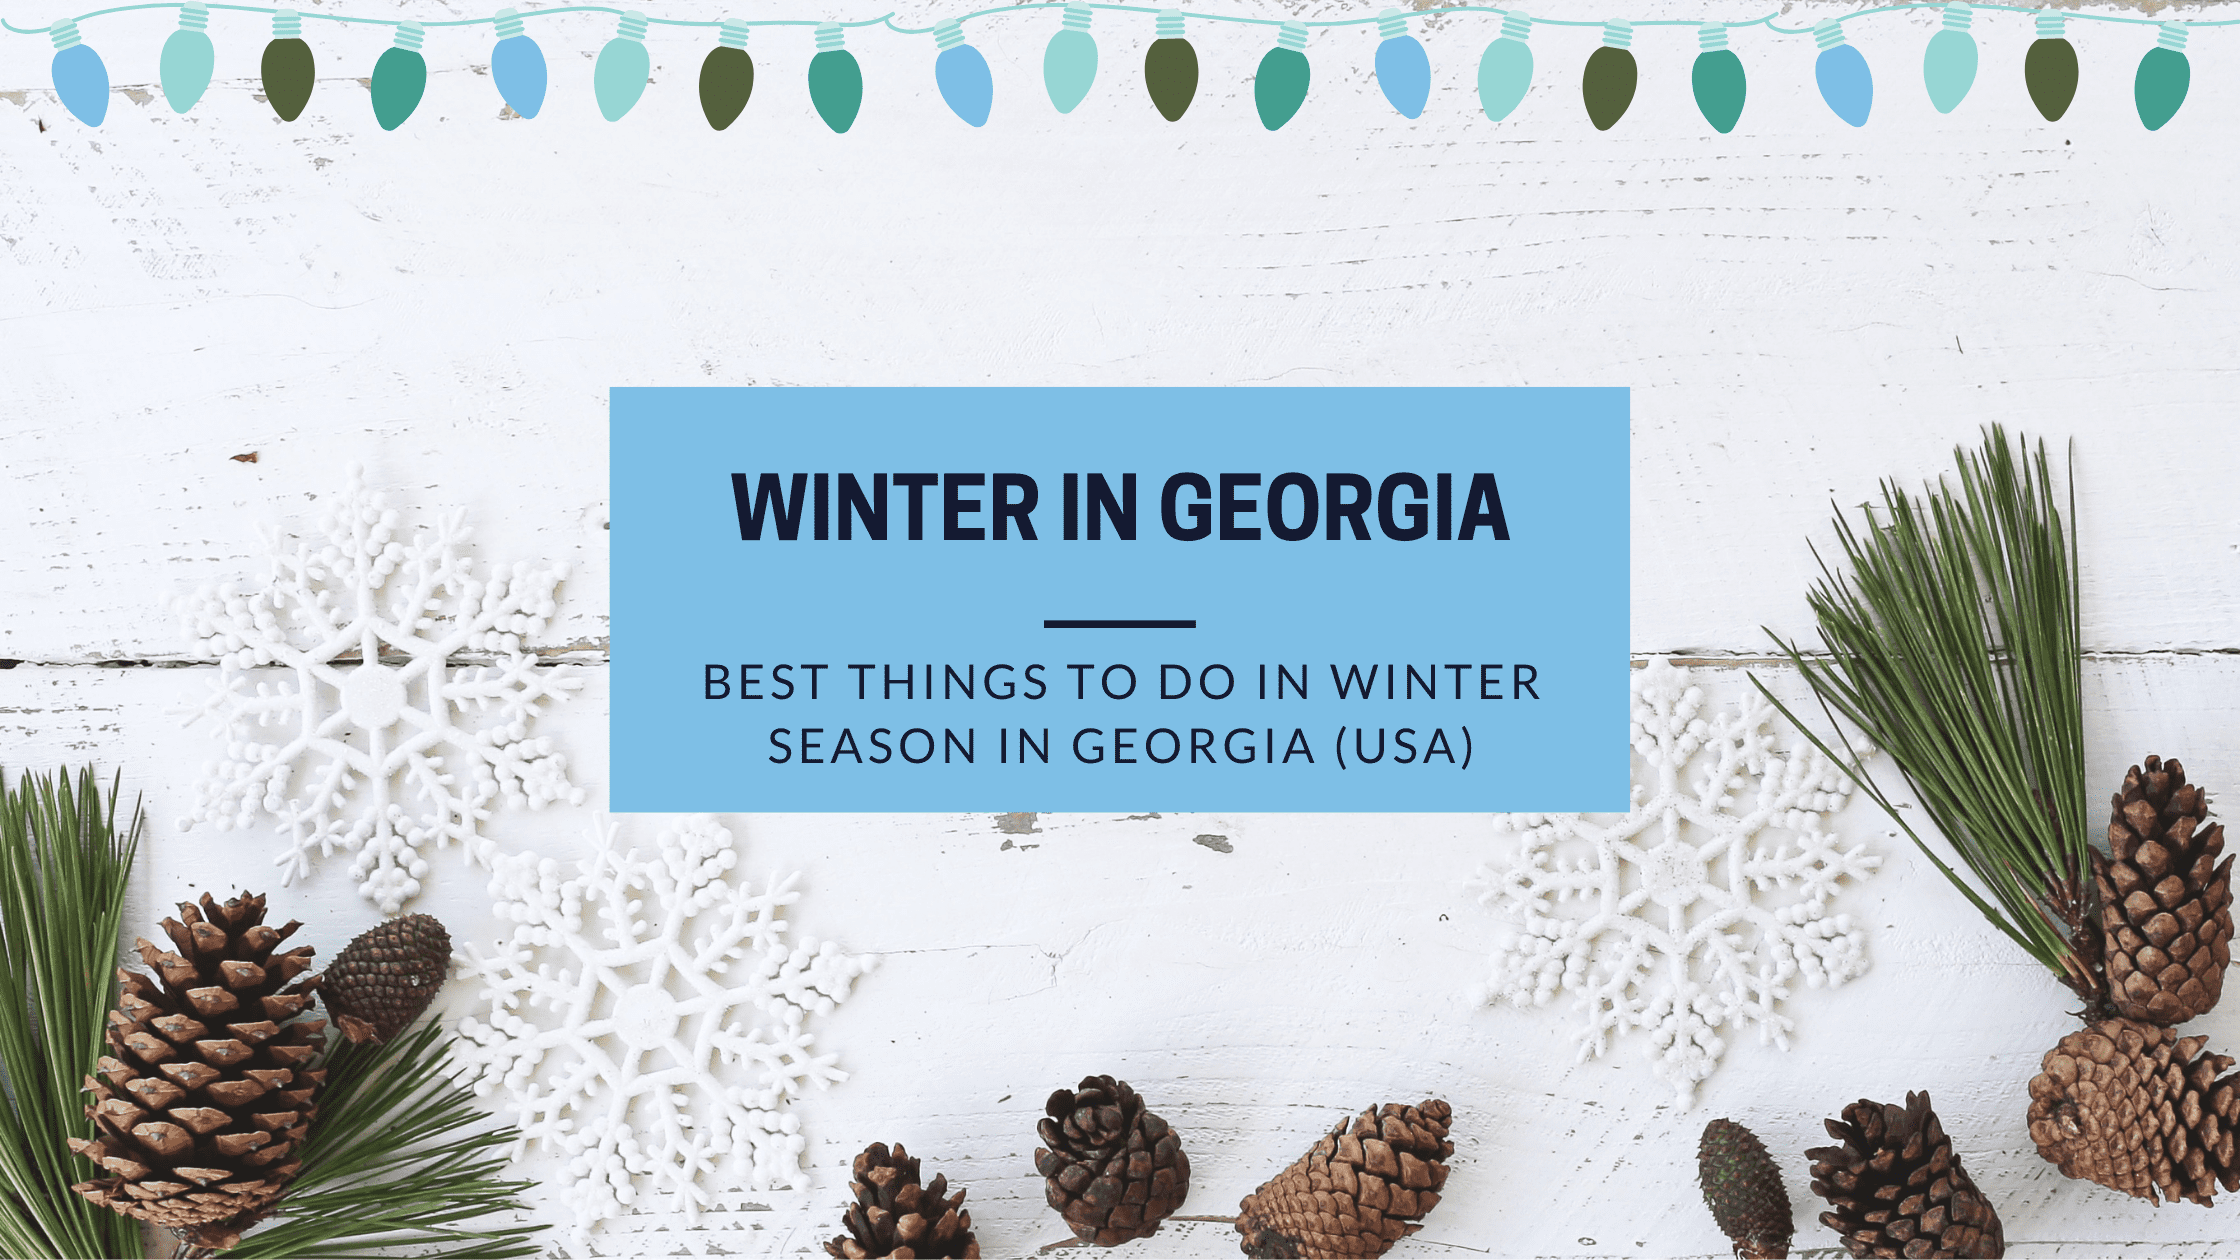 Winter Season in Georgia